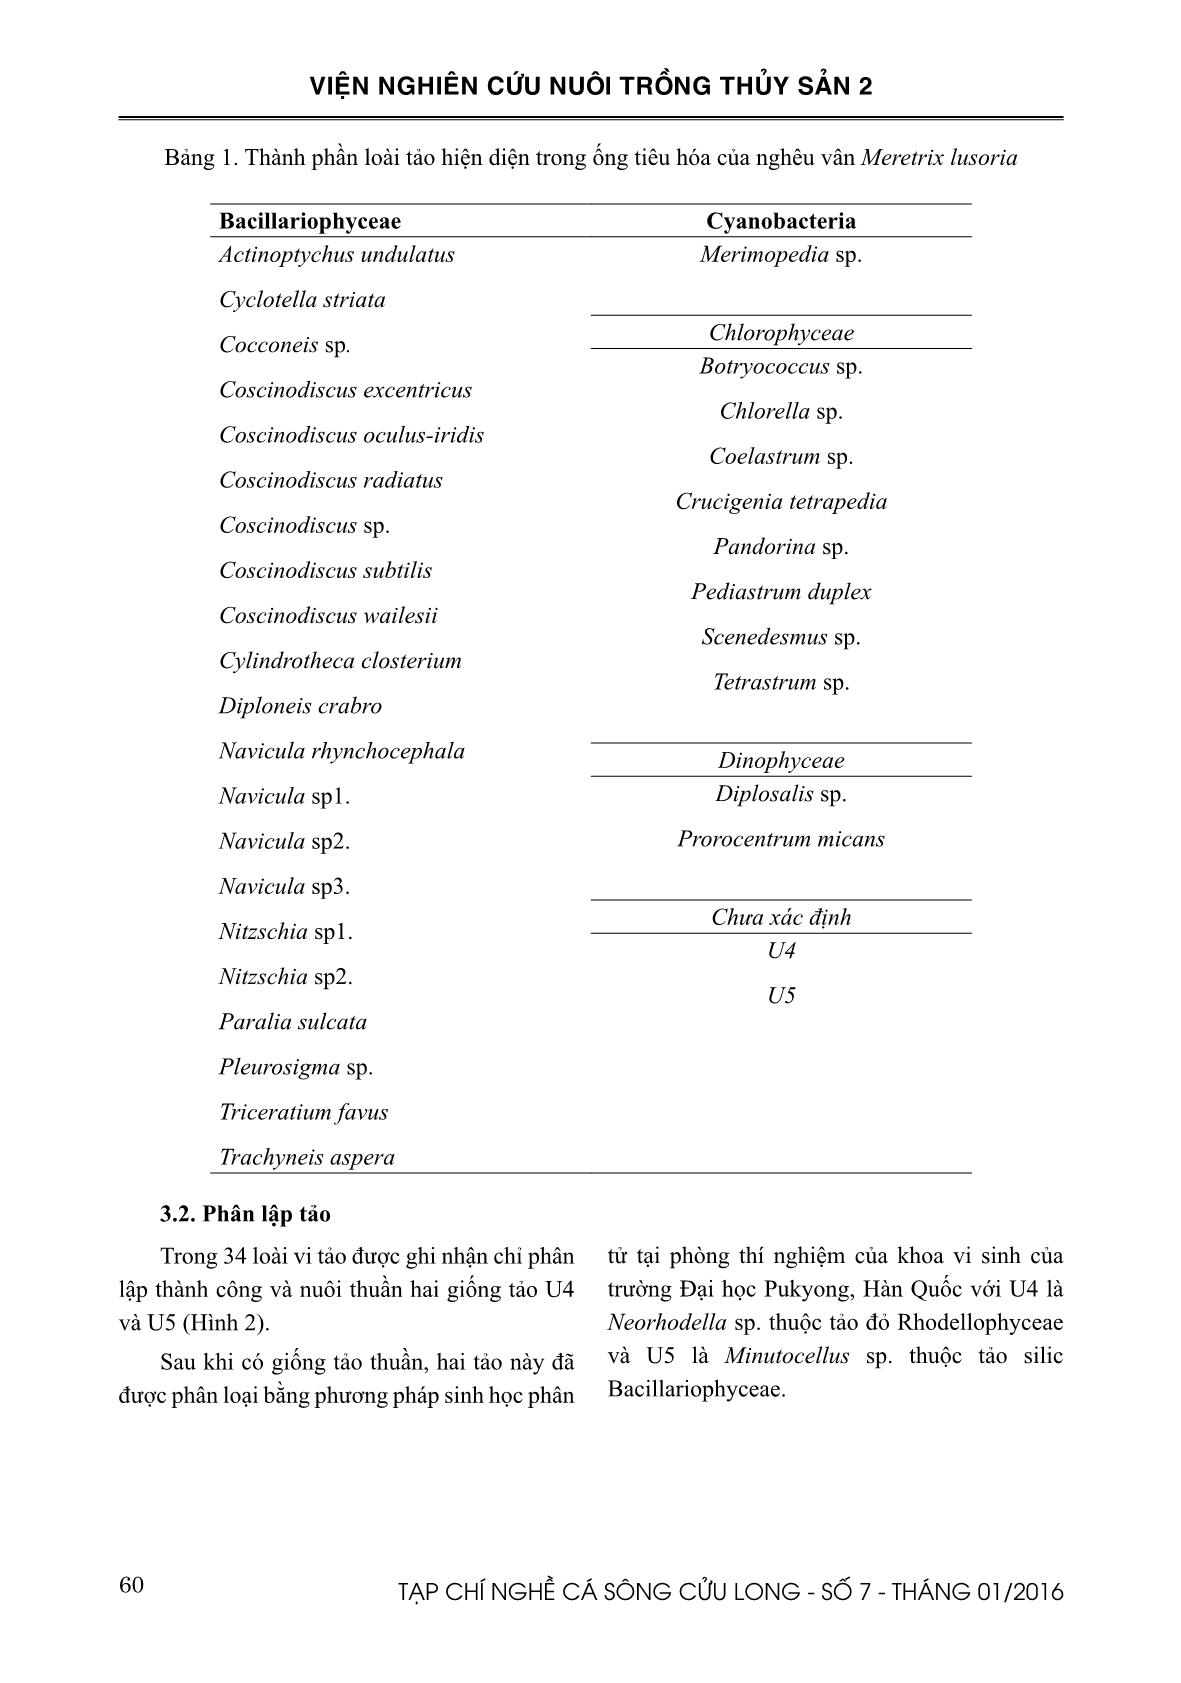 Thành phần loài và đặc điểm tăng trưởng các loài tảo phân lập từ ống tiêu hóa của nghêu vân (Meretrix lusoria) trang 3